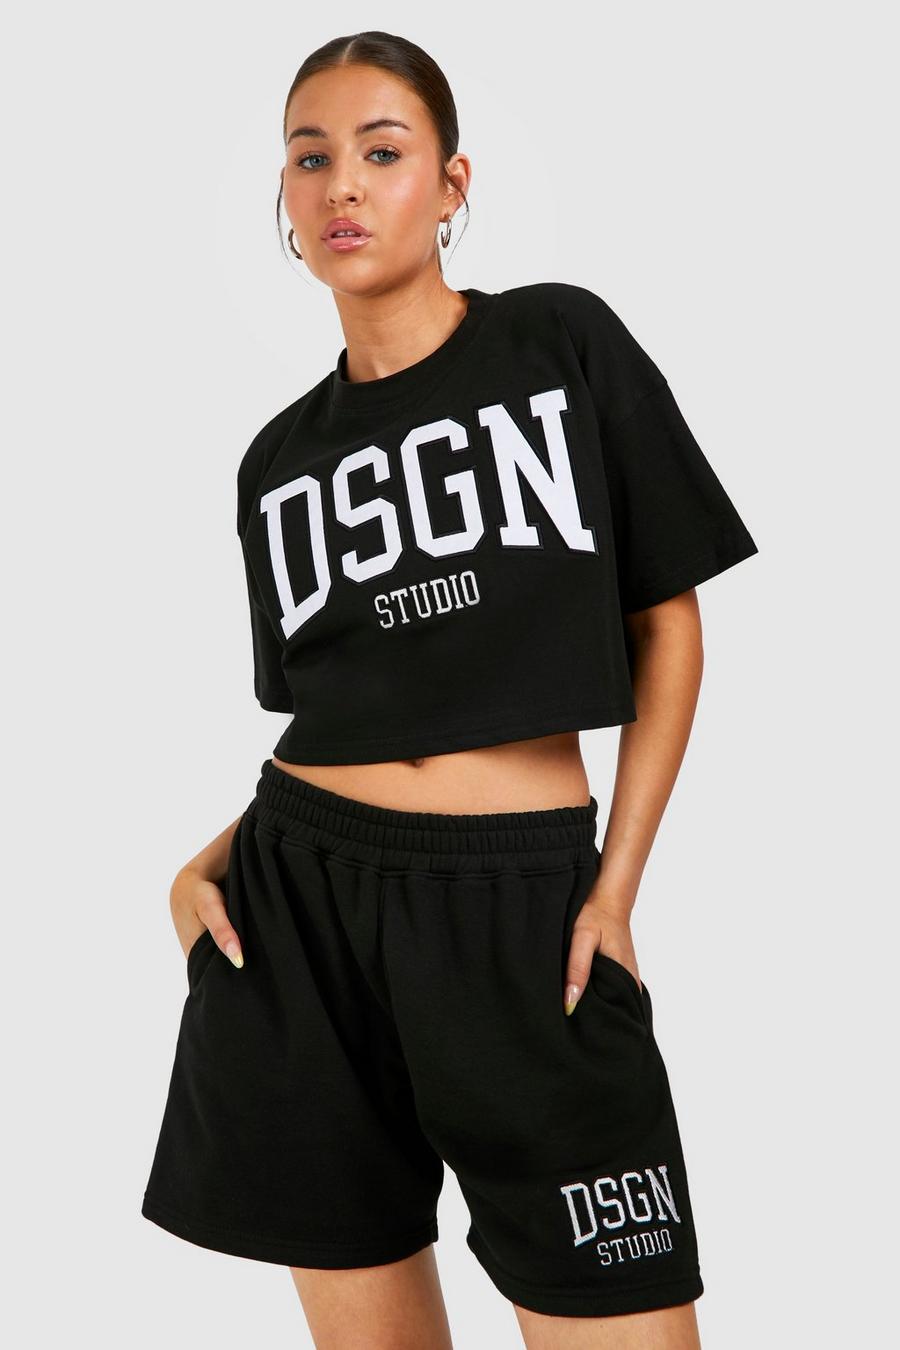 Black Dsgn Studio Applique Crop T-shirt And Short Set